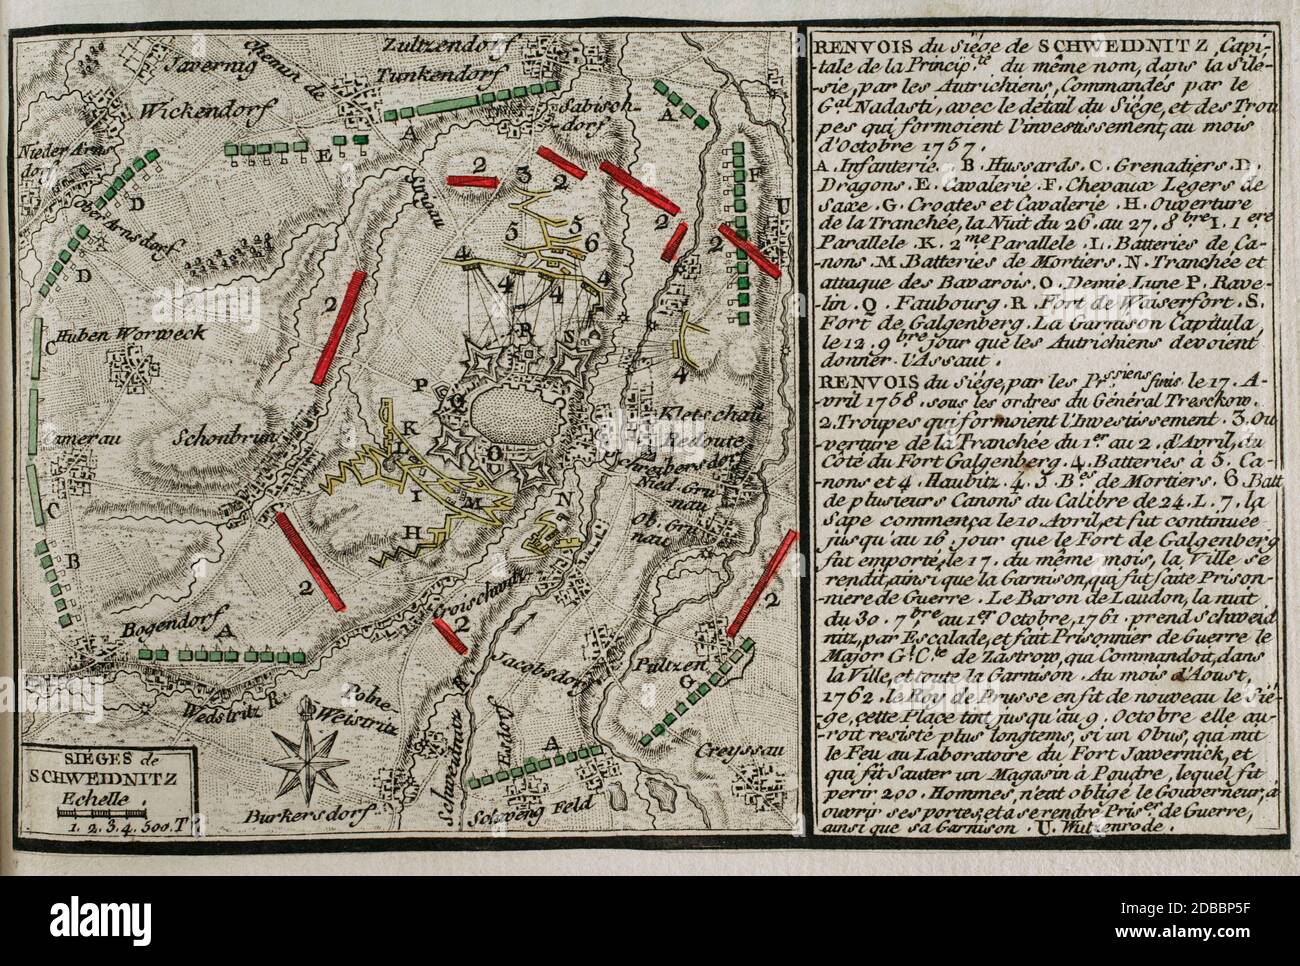 Guerra de los Siete años. Tercera Guerra di Slesia. Sitios de Schweidnitz (octubre de 1757 y abril de 1758). Un cuerpo de ejército austríaco, al modo del General Franz Leipold von Nadaddy, rodeó Schweidinitz el 14 de octubre de 1757. El 15 de marzo de 1758, Federico II de Prusia se trasladó a Breslau. Iniciar la nueva campaña tuvo que controlar la ciudad de Schweidnitz, en poder de los austríacos. La orden de iniciar el sitio de Schweidnitz le fué dada al General von Tresckow. El 18 de abril de 1758 la guarnición austríaca de Schweidnitz salió de la fortaleza y depositó las armas. L Foto Stock